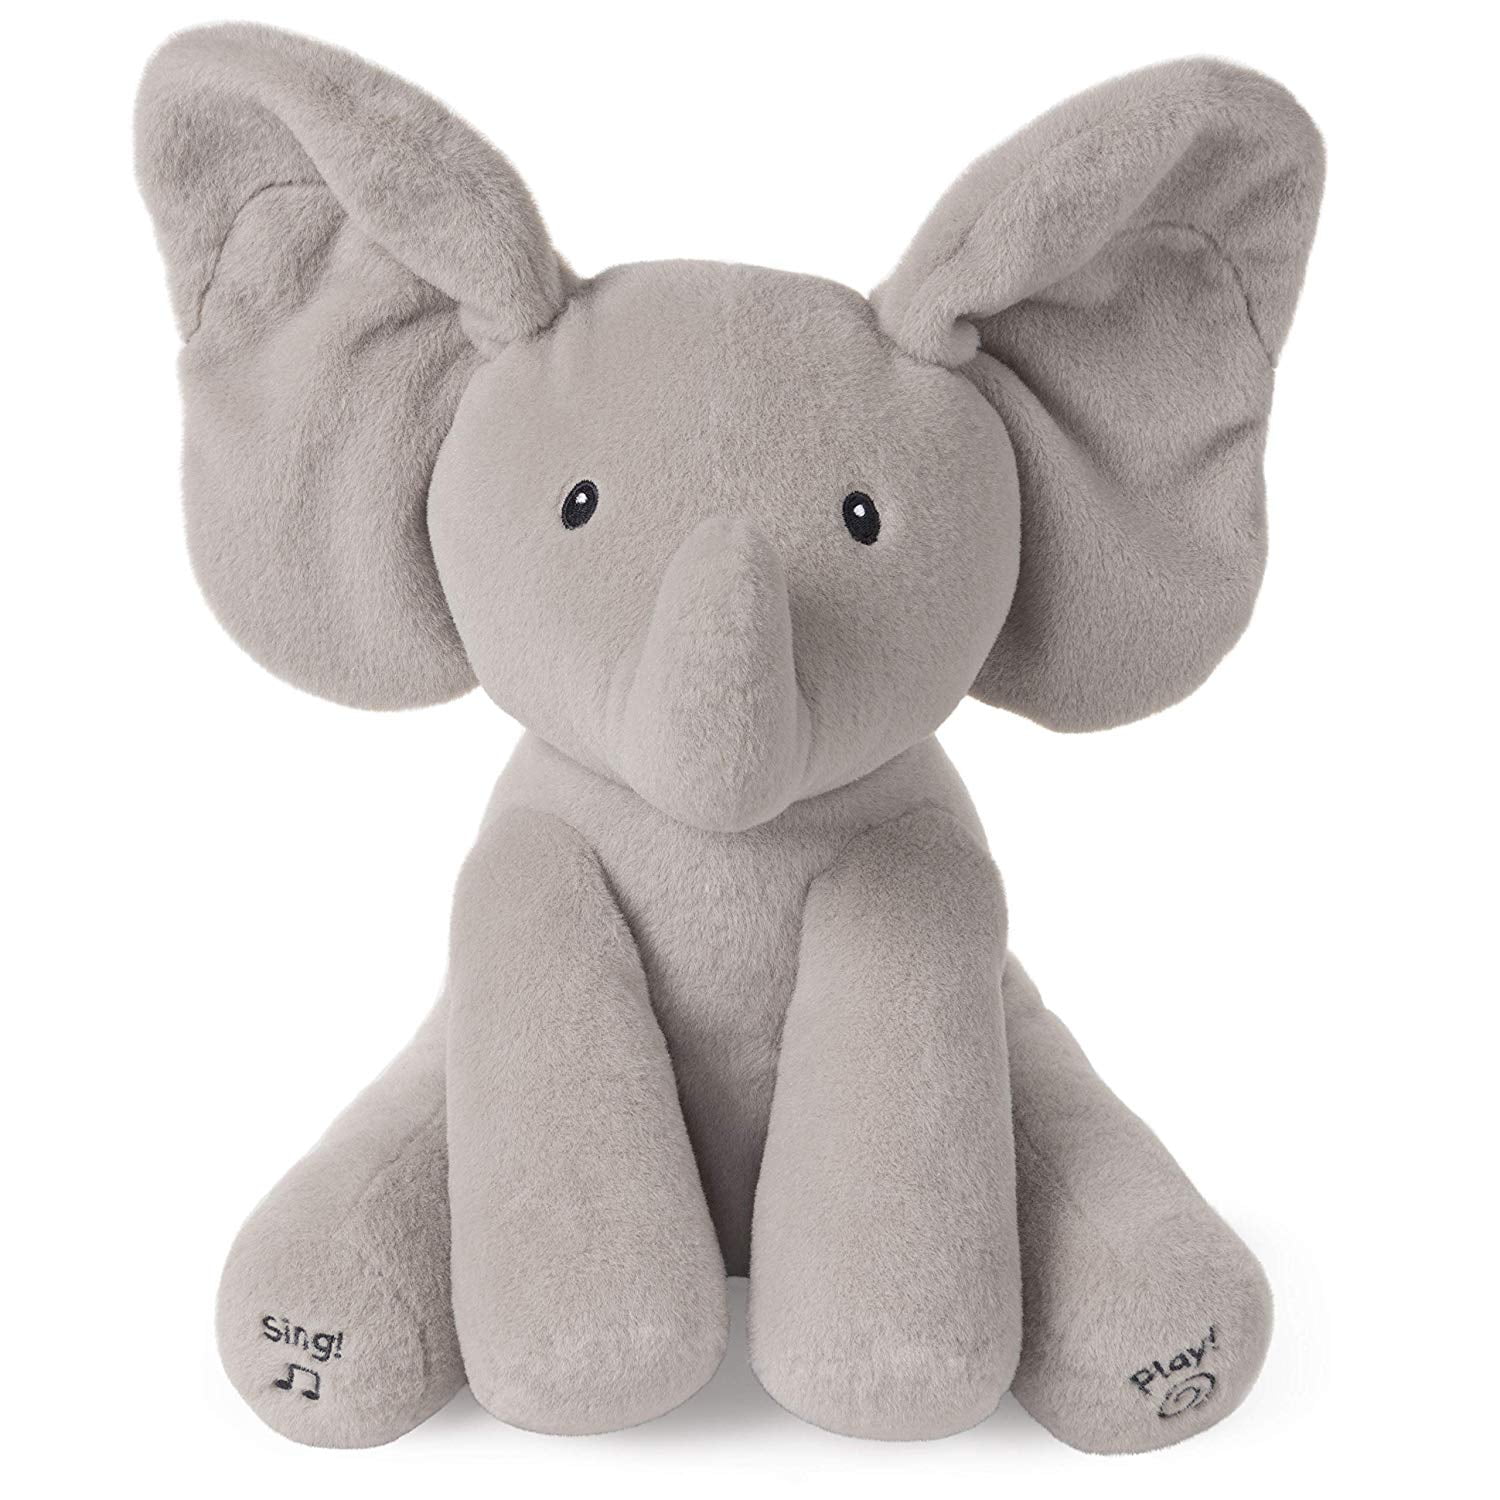 Grey Elephant Aminiture Peek a Boo Elephant Soft Stuffed Plush Toys Animated Talking and Singing Elephant Toys